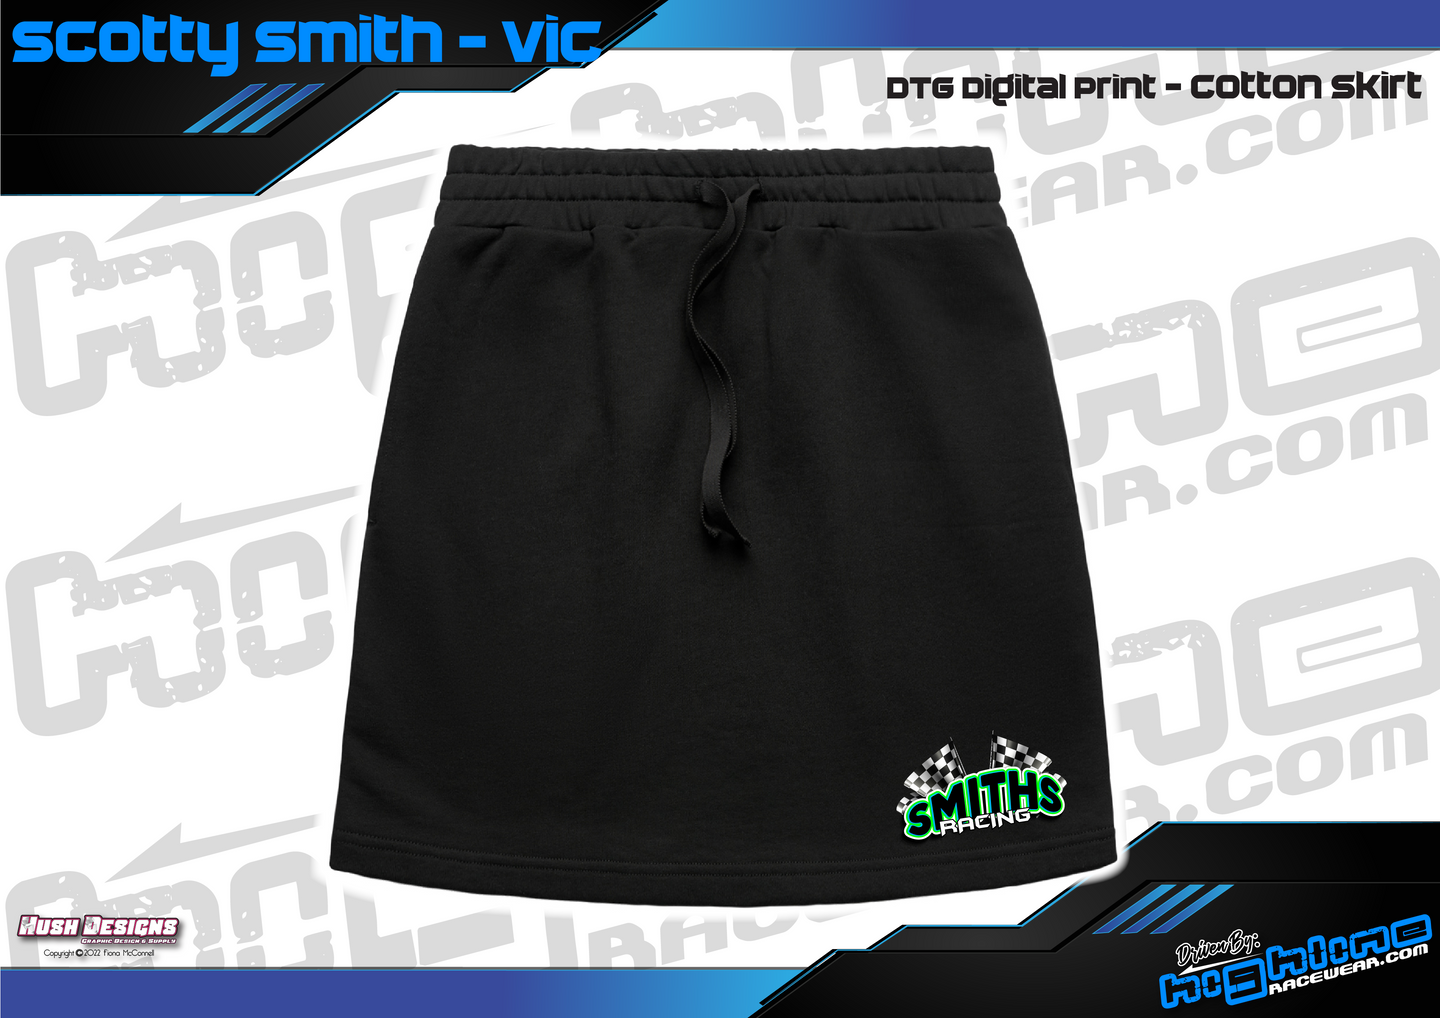 Cotton Skirt - Scotty Smith